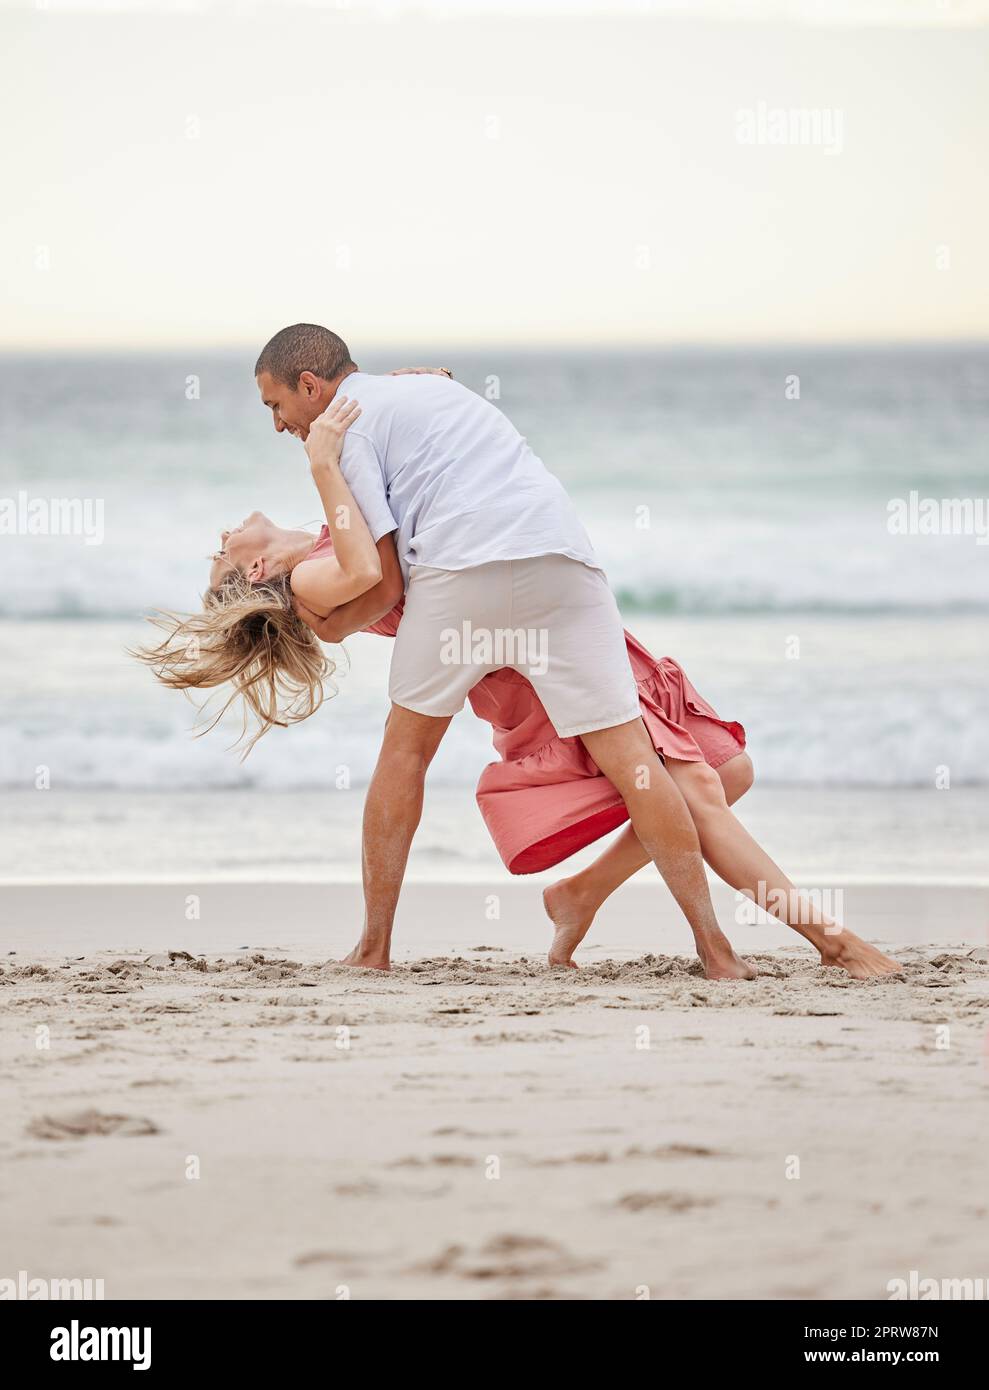 Tanzen, glückliches Paar und Strand feiern Liebe, Vertrauen und Engagement auf romantischen Luxusurlaub Bali Urlaub. Mann und Frau oder Tänzerpaarfeier auf Meerwasser, Sand und Sonnenuntergang Ozean Stockfoto